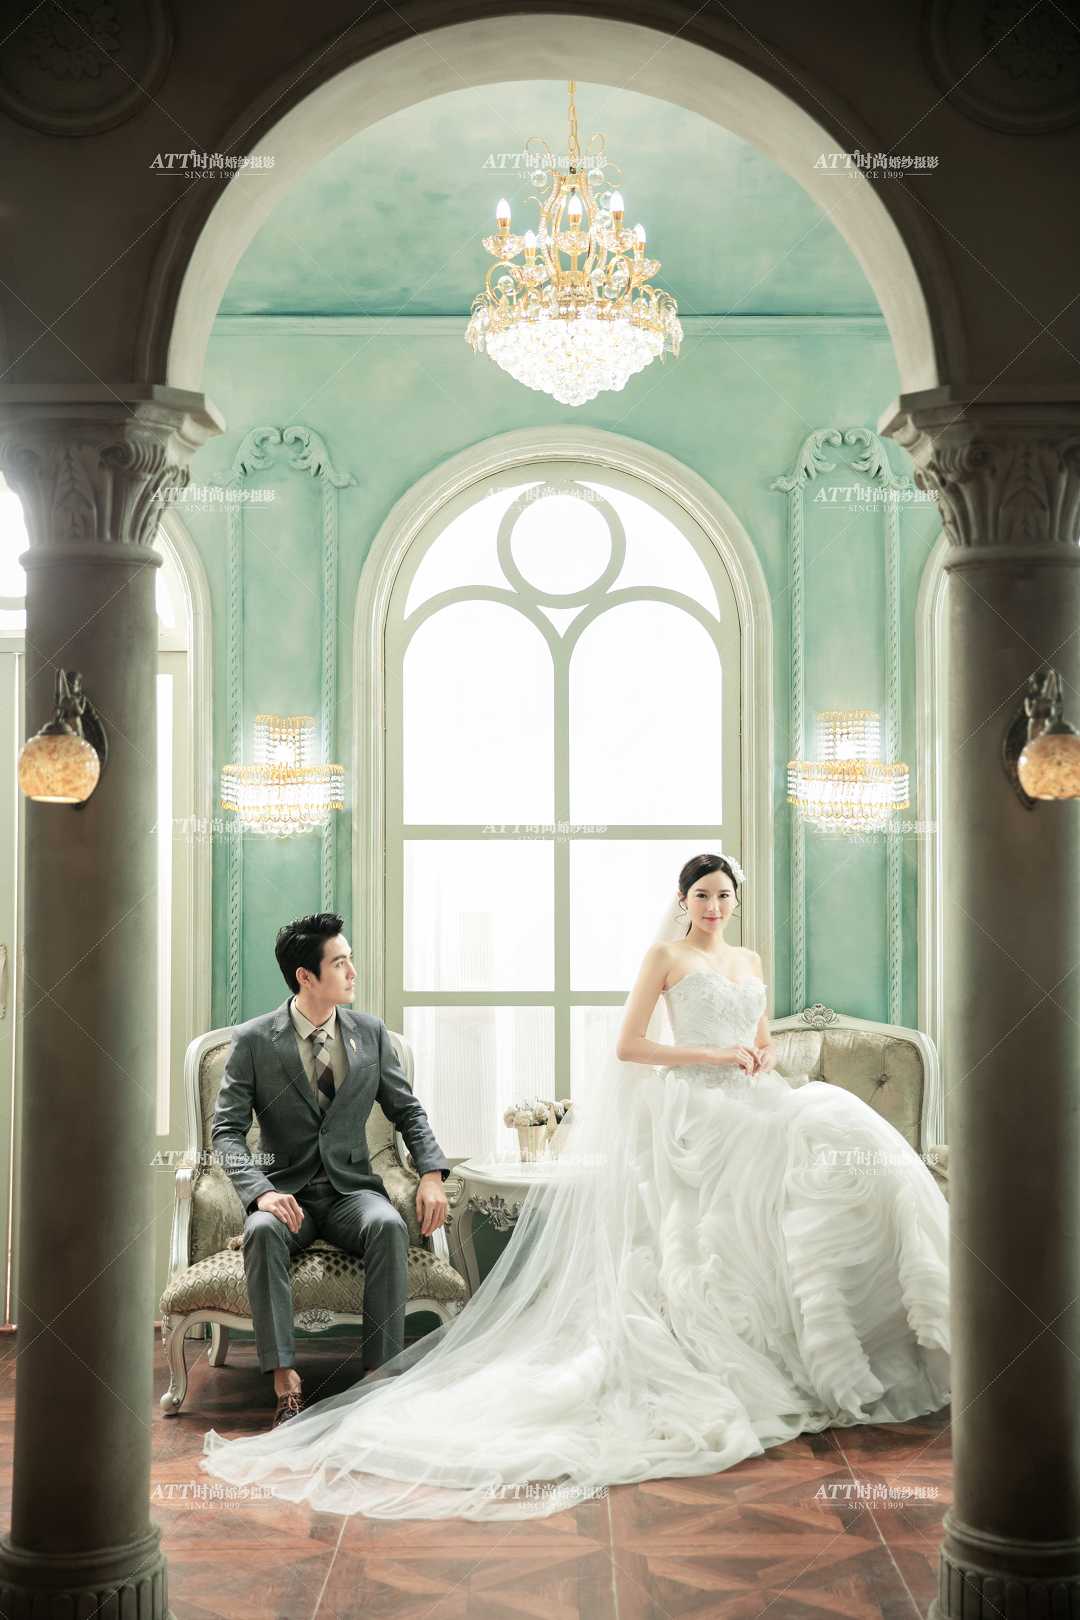 现在ATT婚纱摄影推出海南三亚婚纱套系